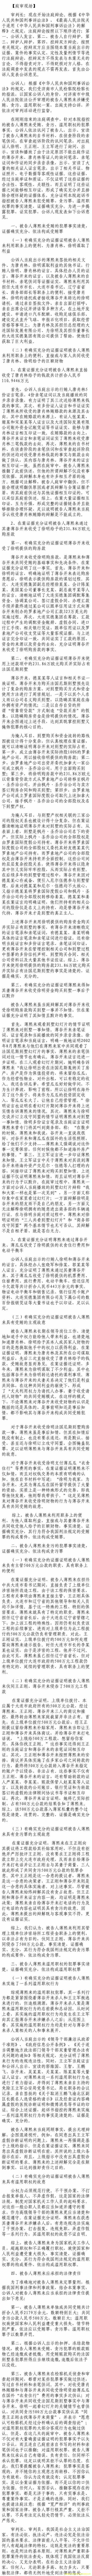 济南市中级法院官方微博公布的8月26日庭审现场记录（1）